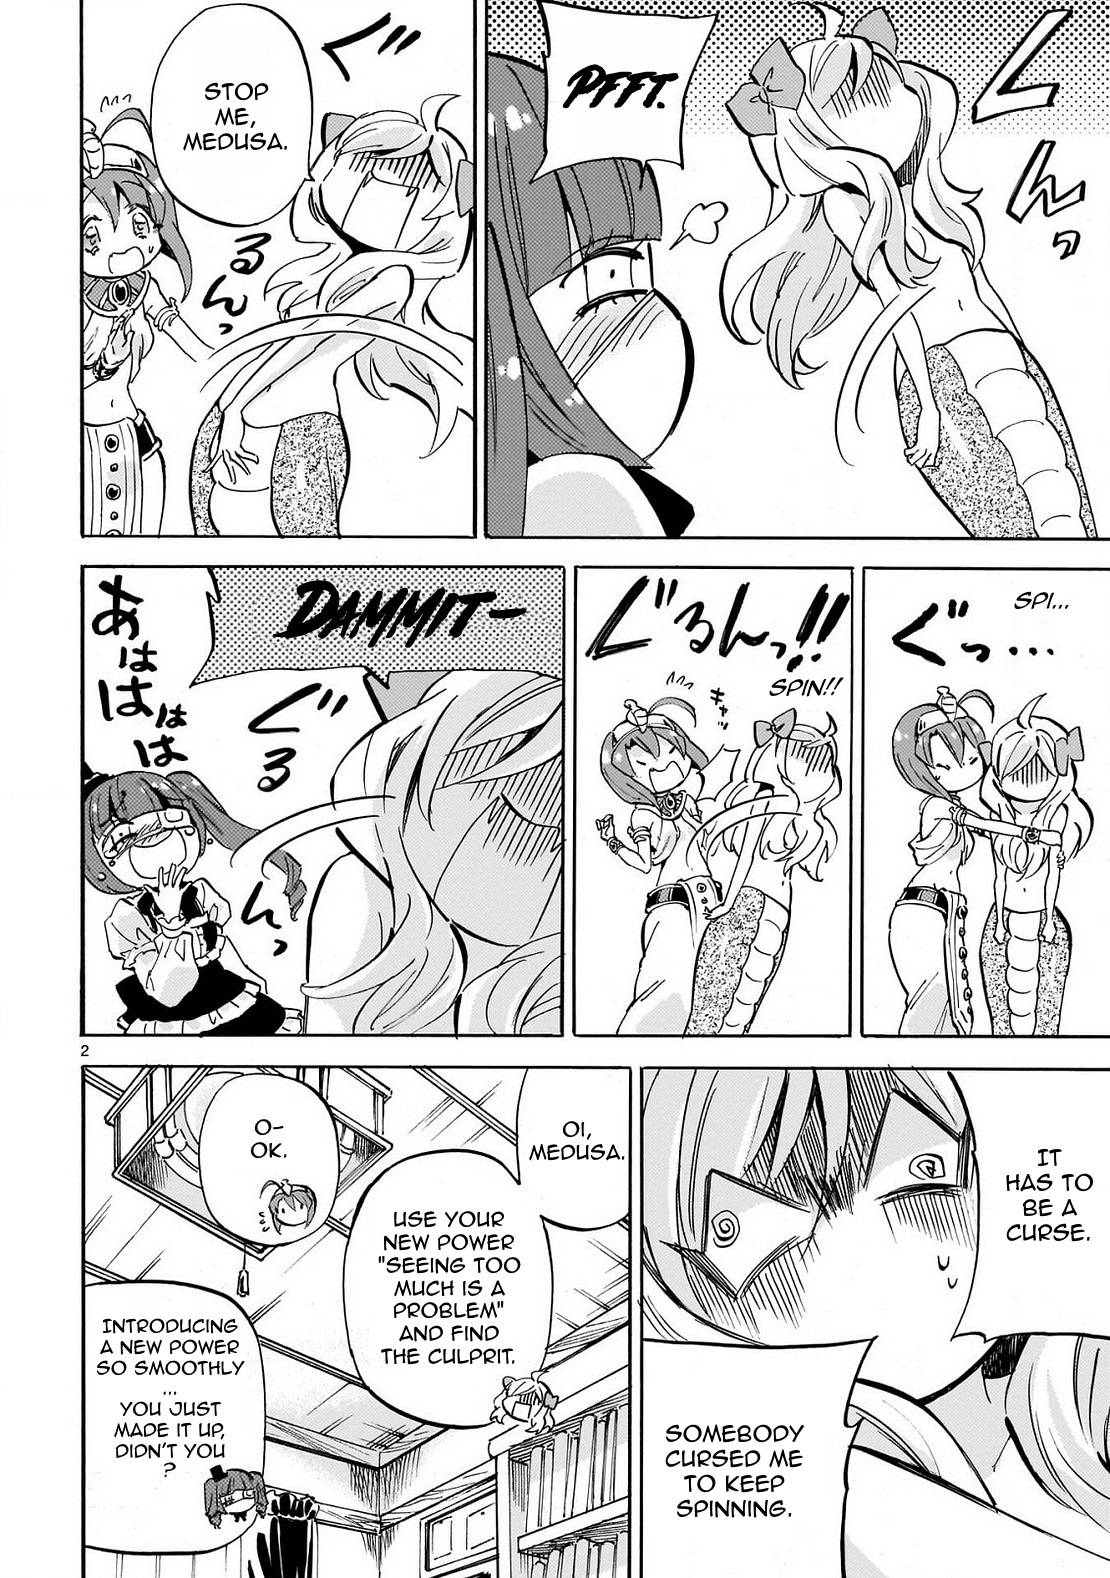 Jashin-chan Dropkick chapter 231 page 2